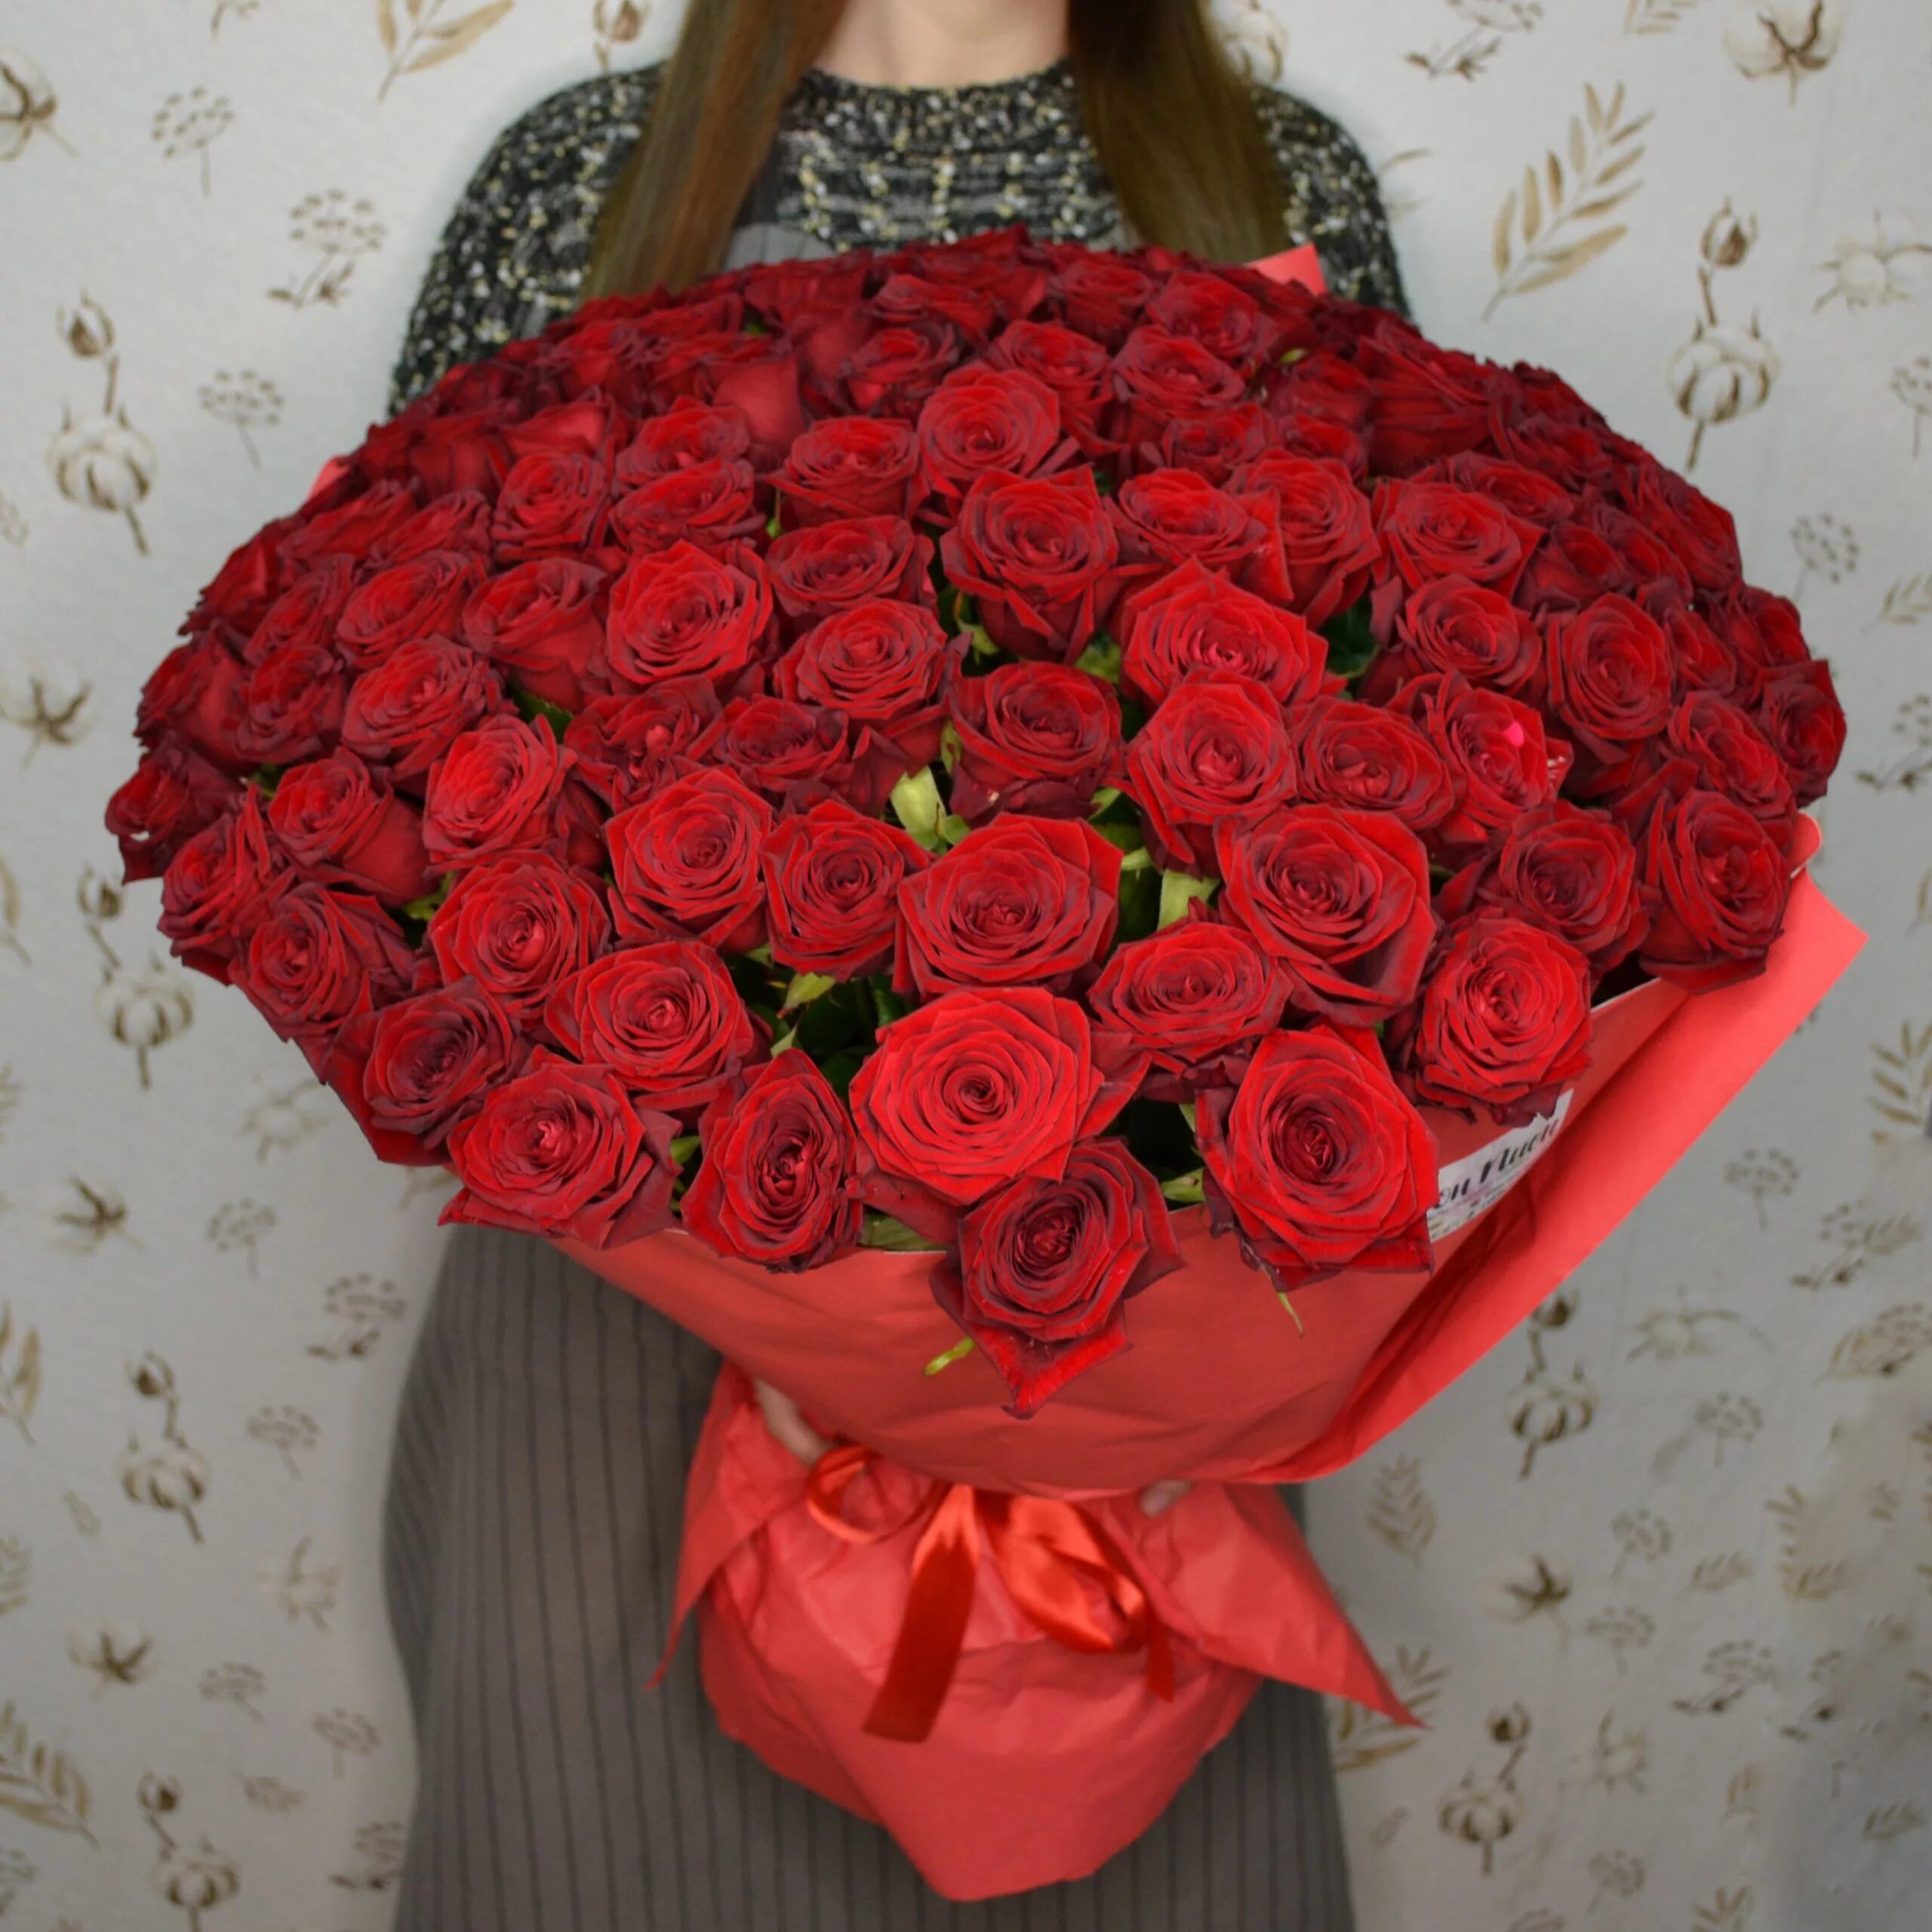 Сколько стоит букет цветов роз. Букет из красных роз (101роза).